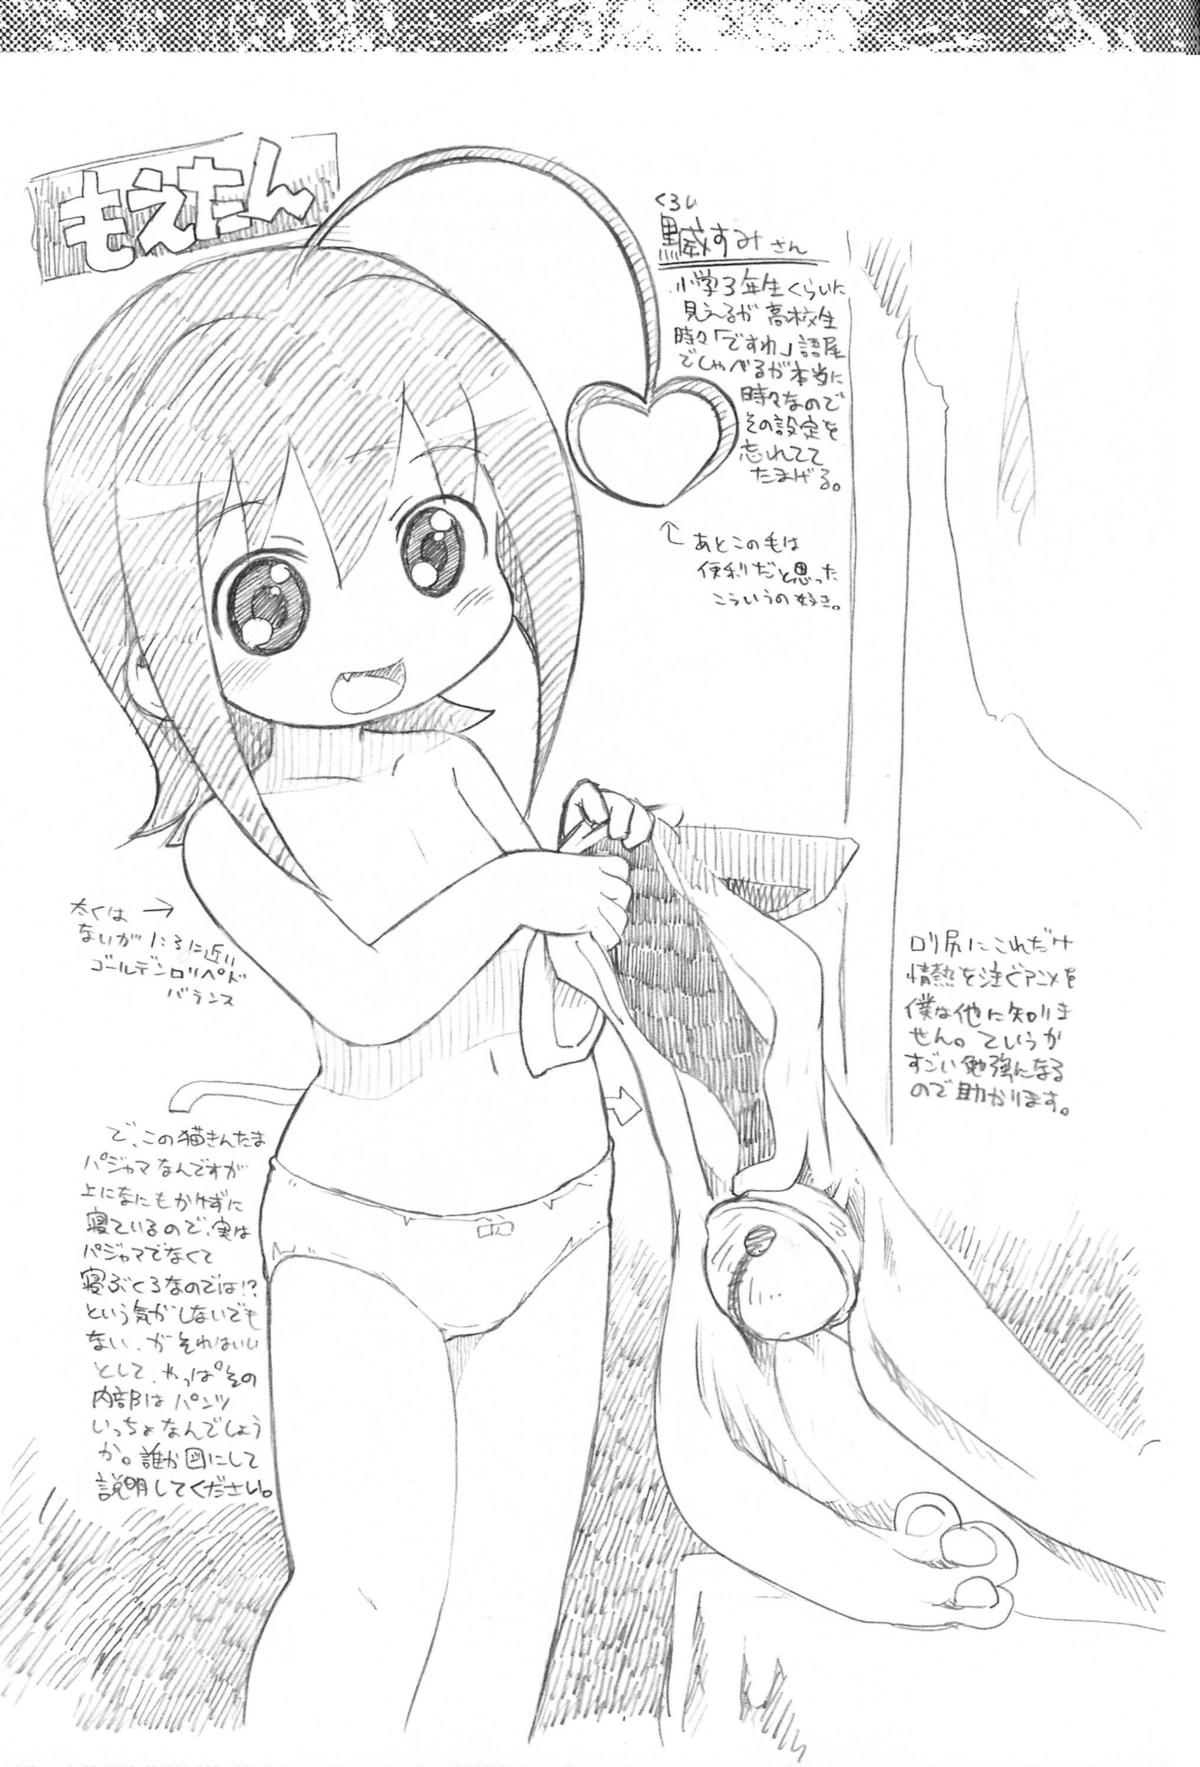 (C72) (ブロンコ一人旅, スミカラスミマデ) 内々欅とガビョ布の好きな物を描きたいところだけ☆2.0 (various)